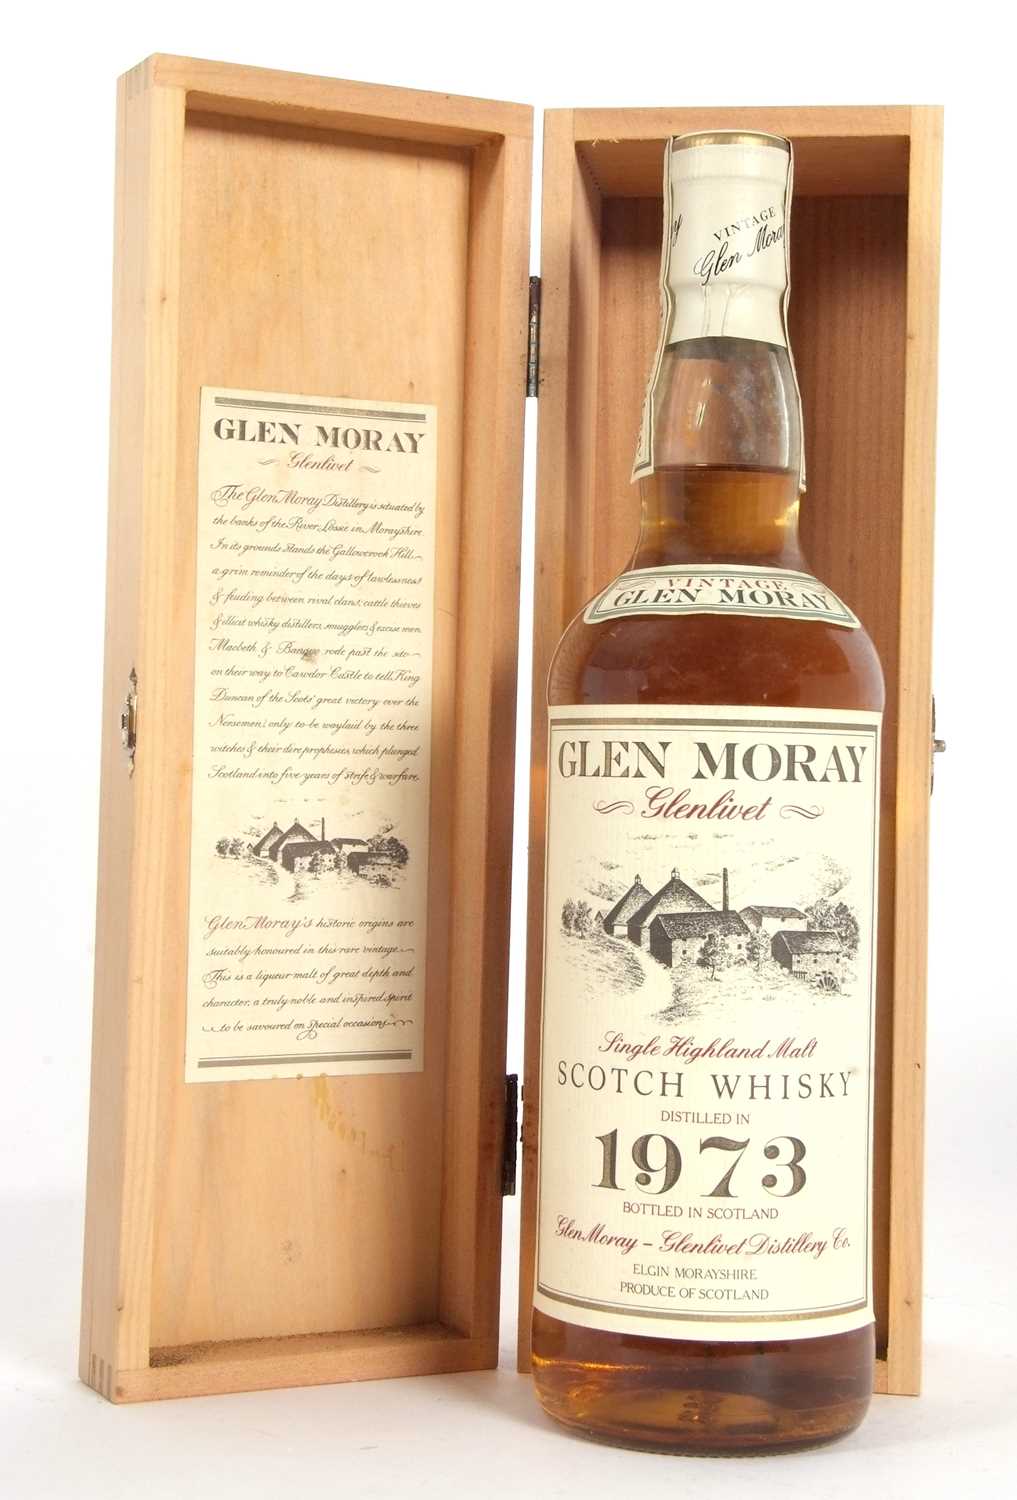 Glen Moray Glenlivet Vintage 1973 Aingle Highland Malt Whisky, 75cl, in original wooden presentation - Image 2 of 10